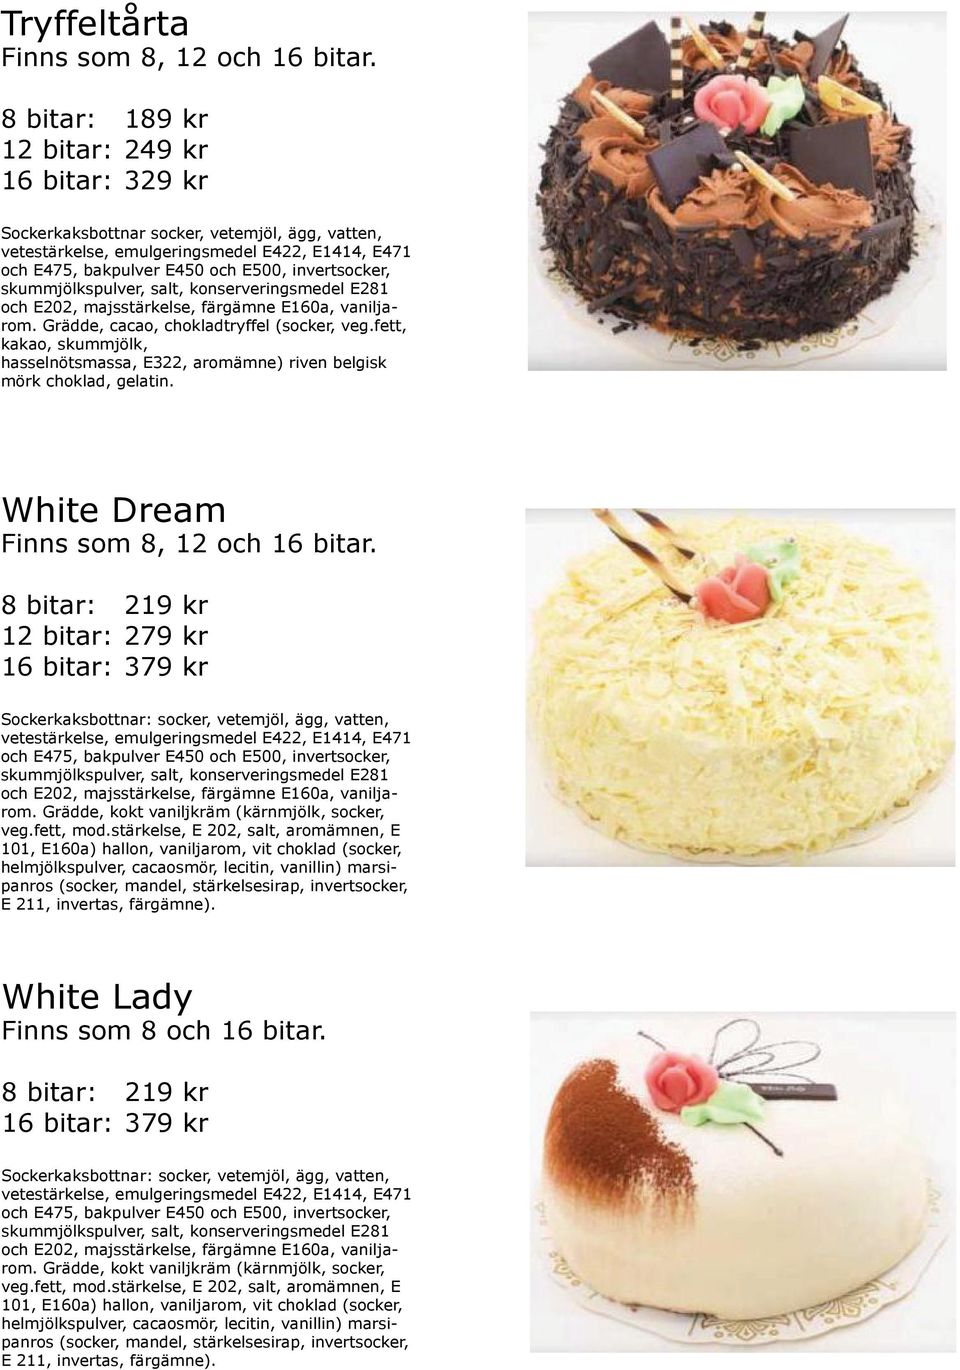 White Dream 12 bitar: 279 kr 16 bitar: 379 kr Sockerkaksbottnar: socker, vetemjöl, ägg, vatten, Grädde, kokt vaniljkräm (kärnmjölk, socker, veg.fett, mod.